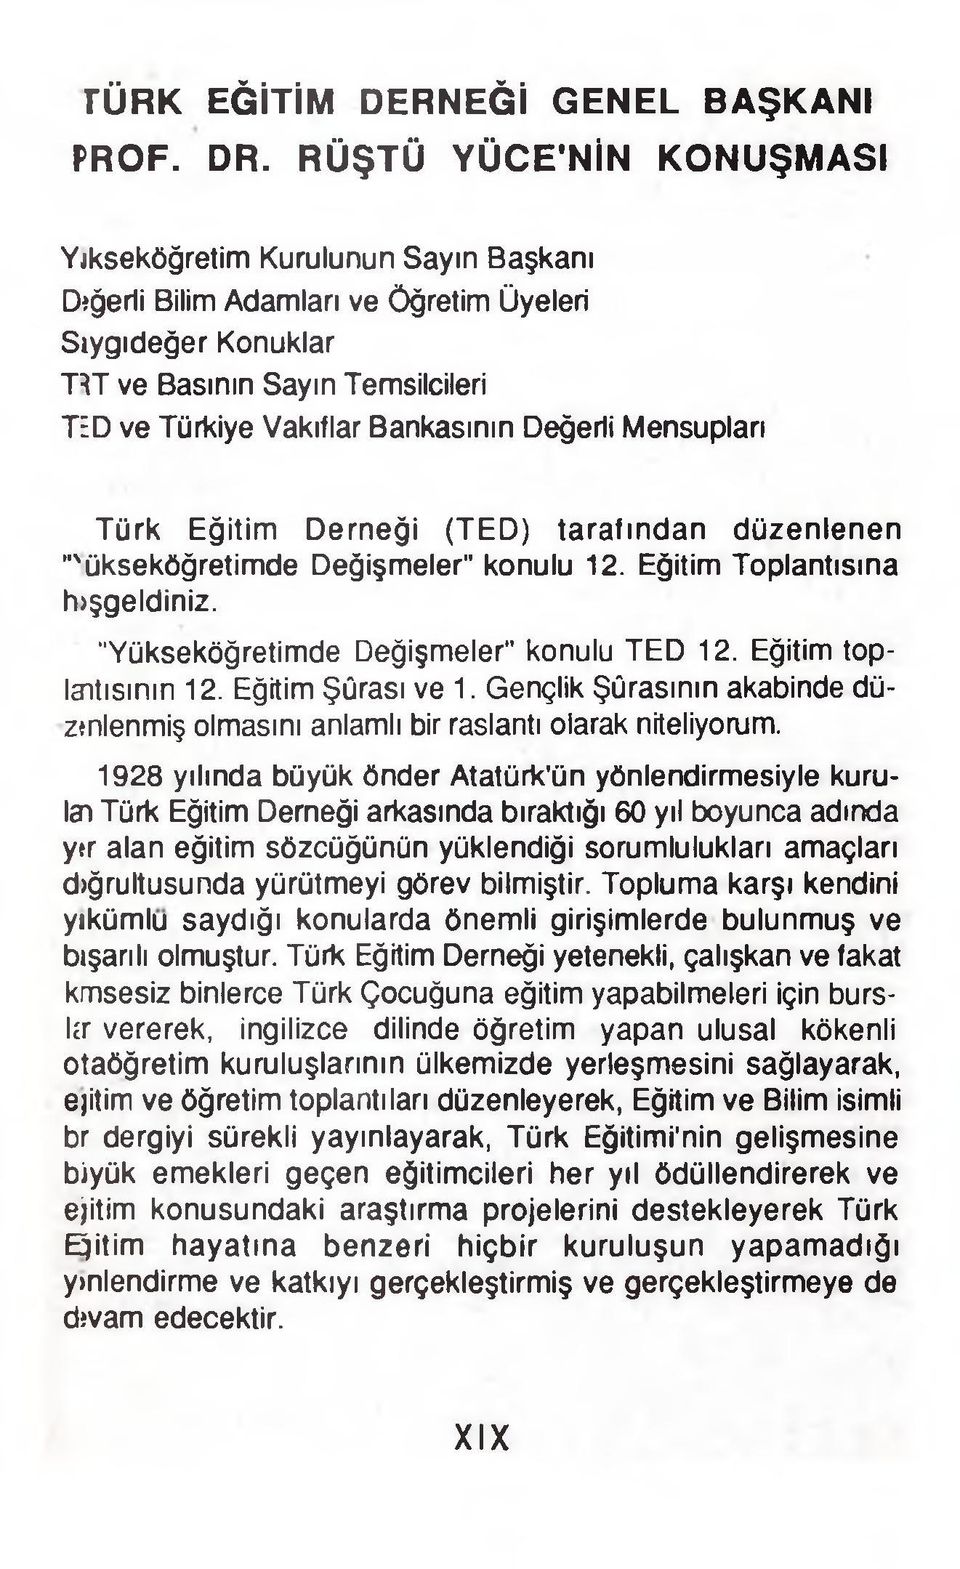 Değerli Mensupları Türk Eğitim Derneği (TED) tarafından düzenlenen "'ükseköğretimde Değişmeler" konulu 12. Eğitim Toplantısına hjşgeldiniz. "Yükseköğretimde Değişmeler" konulu TED 12.